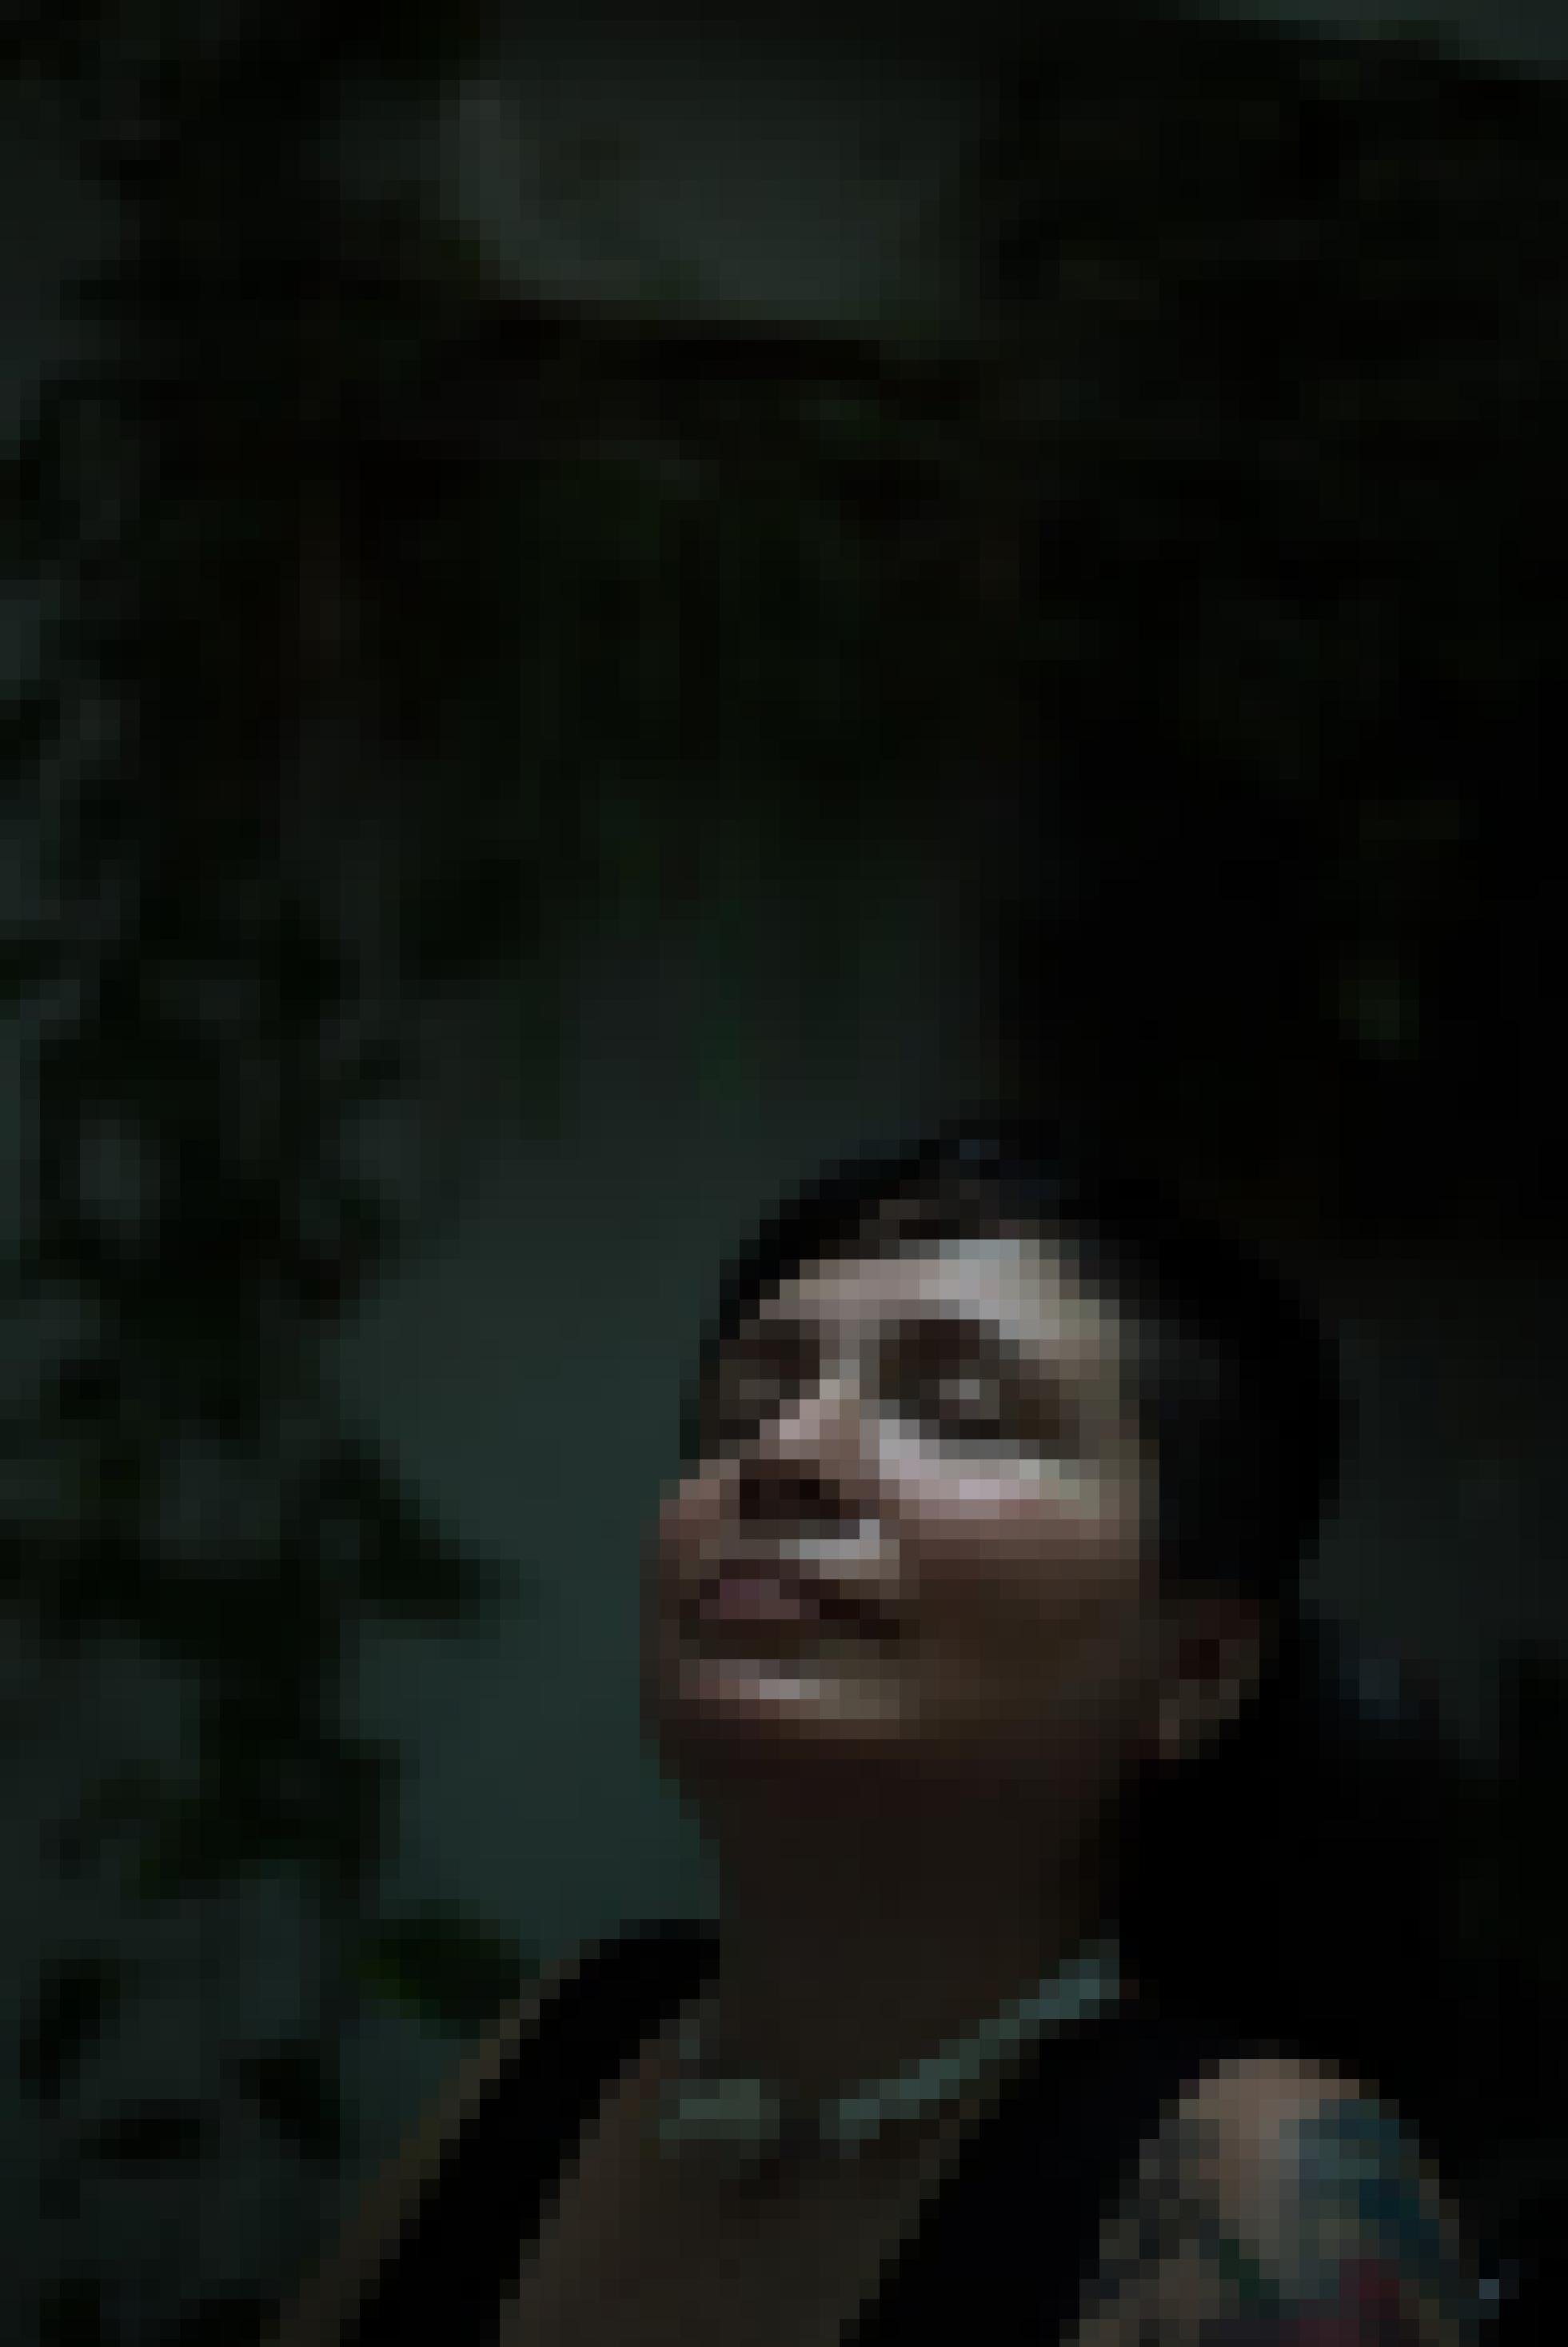 Gesicht einer Frau mit kurzen dunklen Haaren und geschlossenen Augen, nach oben gestreckt. Dunkler Hintergrund